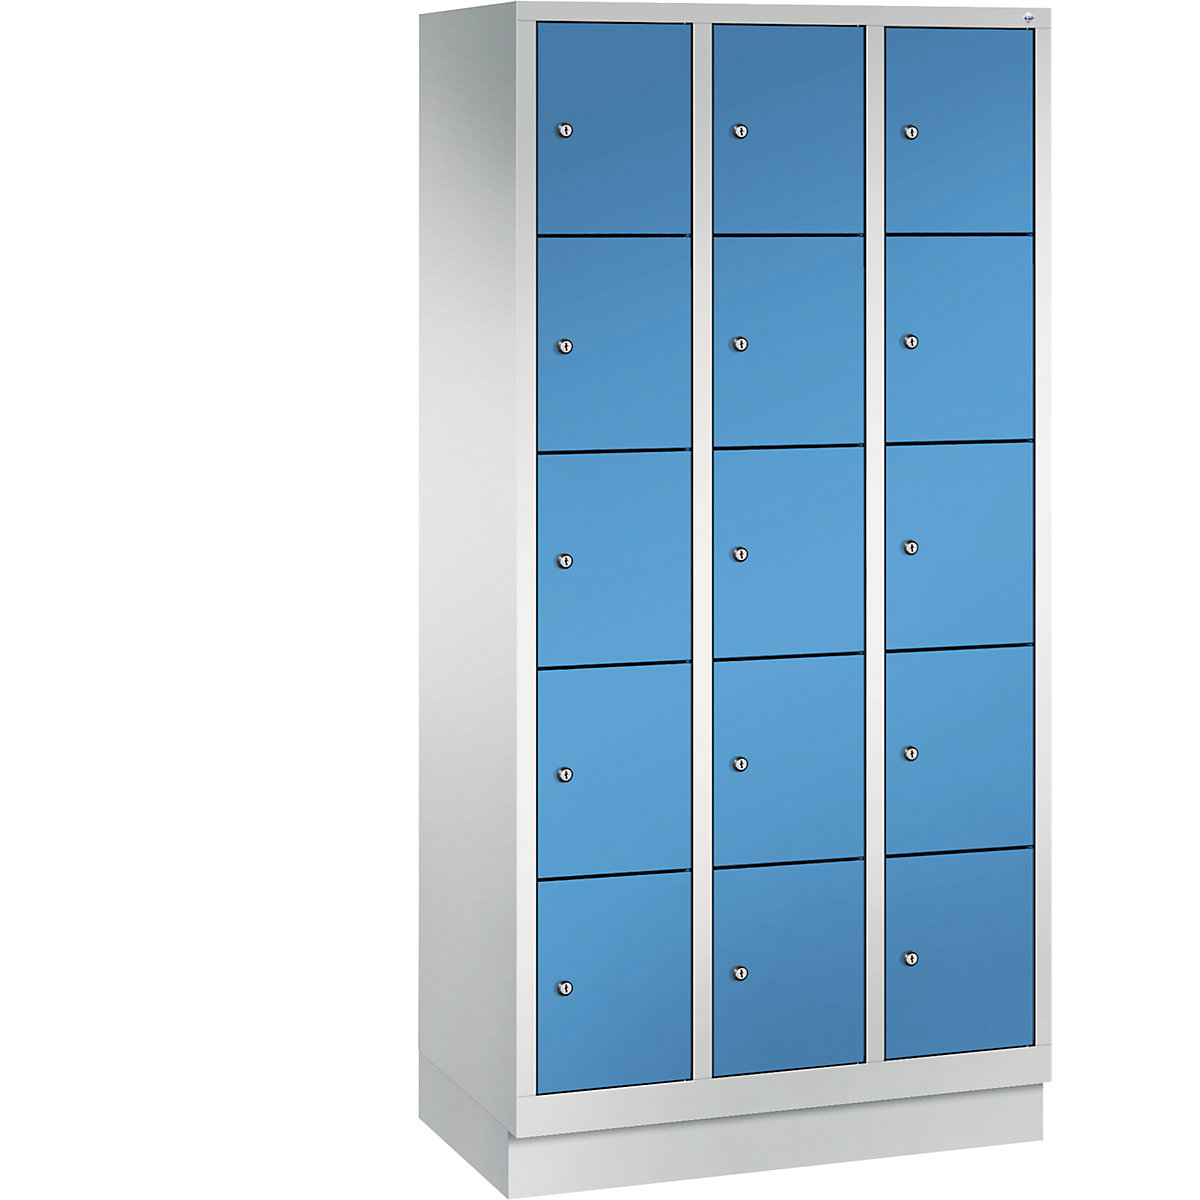 Armário de cacifos CLASSIC com rodapé – C+P, 3 compartimentos, 5 cacifos cada, largura do compartimento 300 mm, cinzento claro/azul claro-4